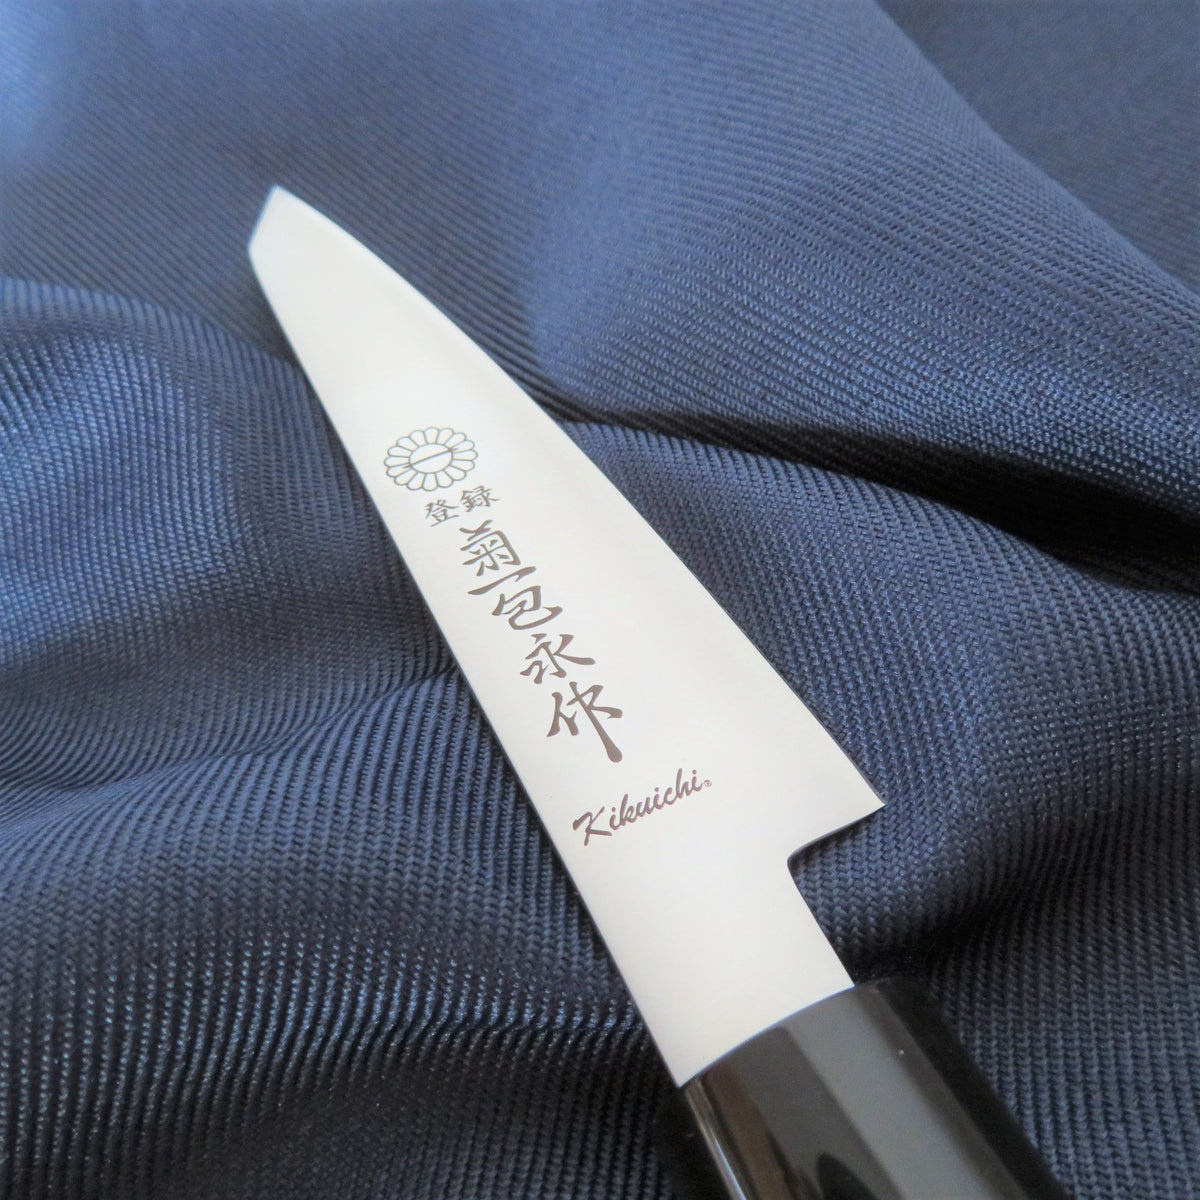 水牛柄 三徳ナイフ日本製 - 調理器具